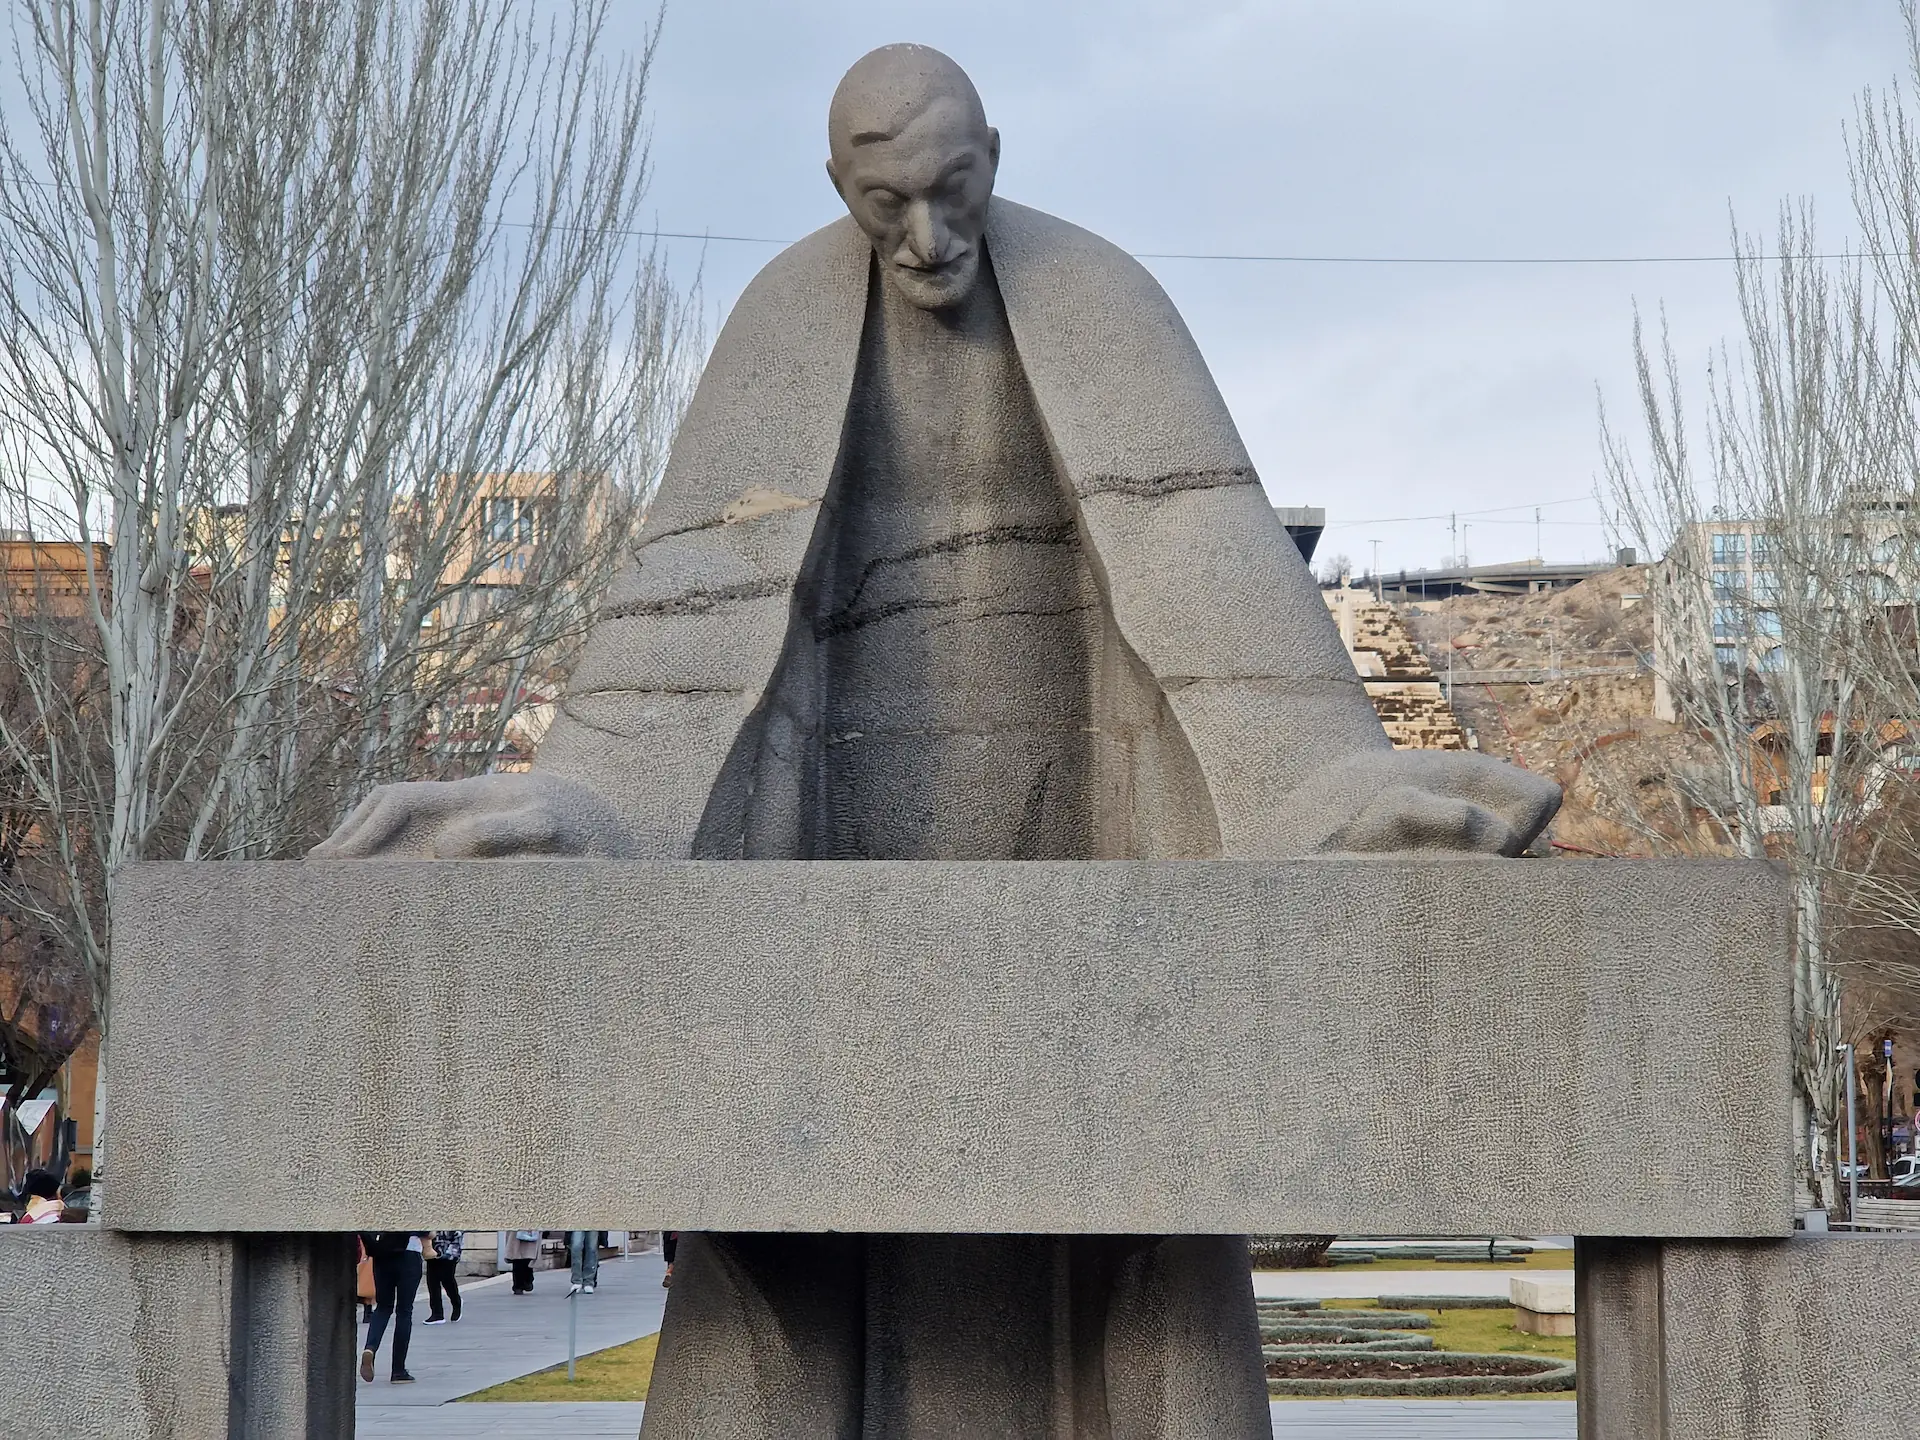 Statue d'Alexander Tamanyan, style brutaliste, taillé dans une pierre claire. La taille de ses bras est exagérée, se terminant en mains immenses, posées sur une table. Il regarde vers le bas, l'air penseur.